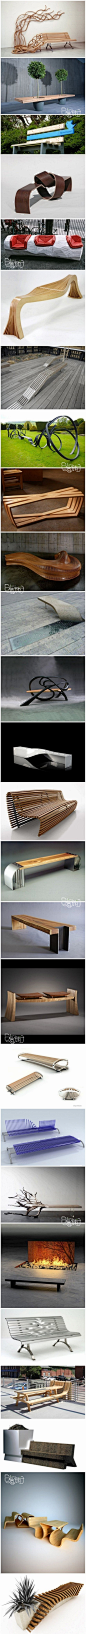 公共长椅的创意设计，你最喜欢哪个呢？